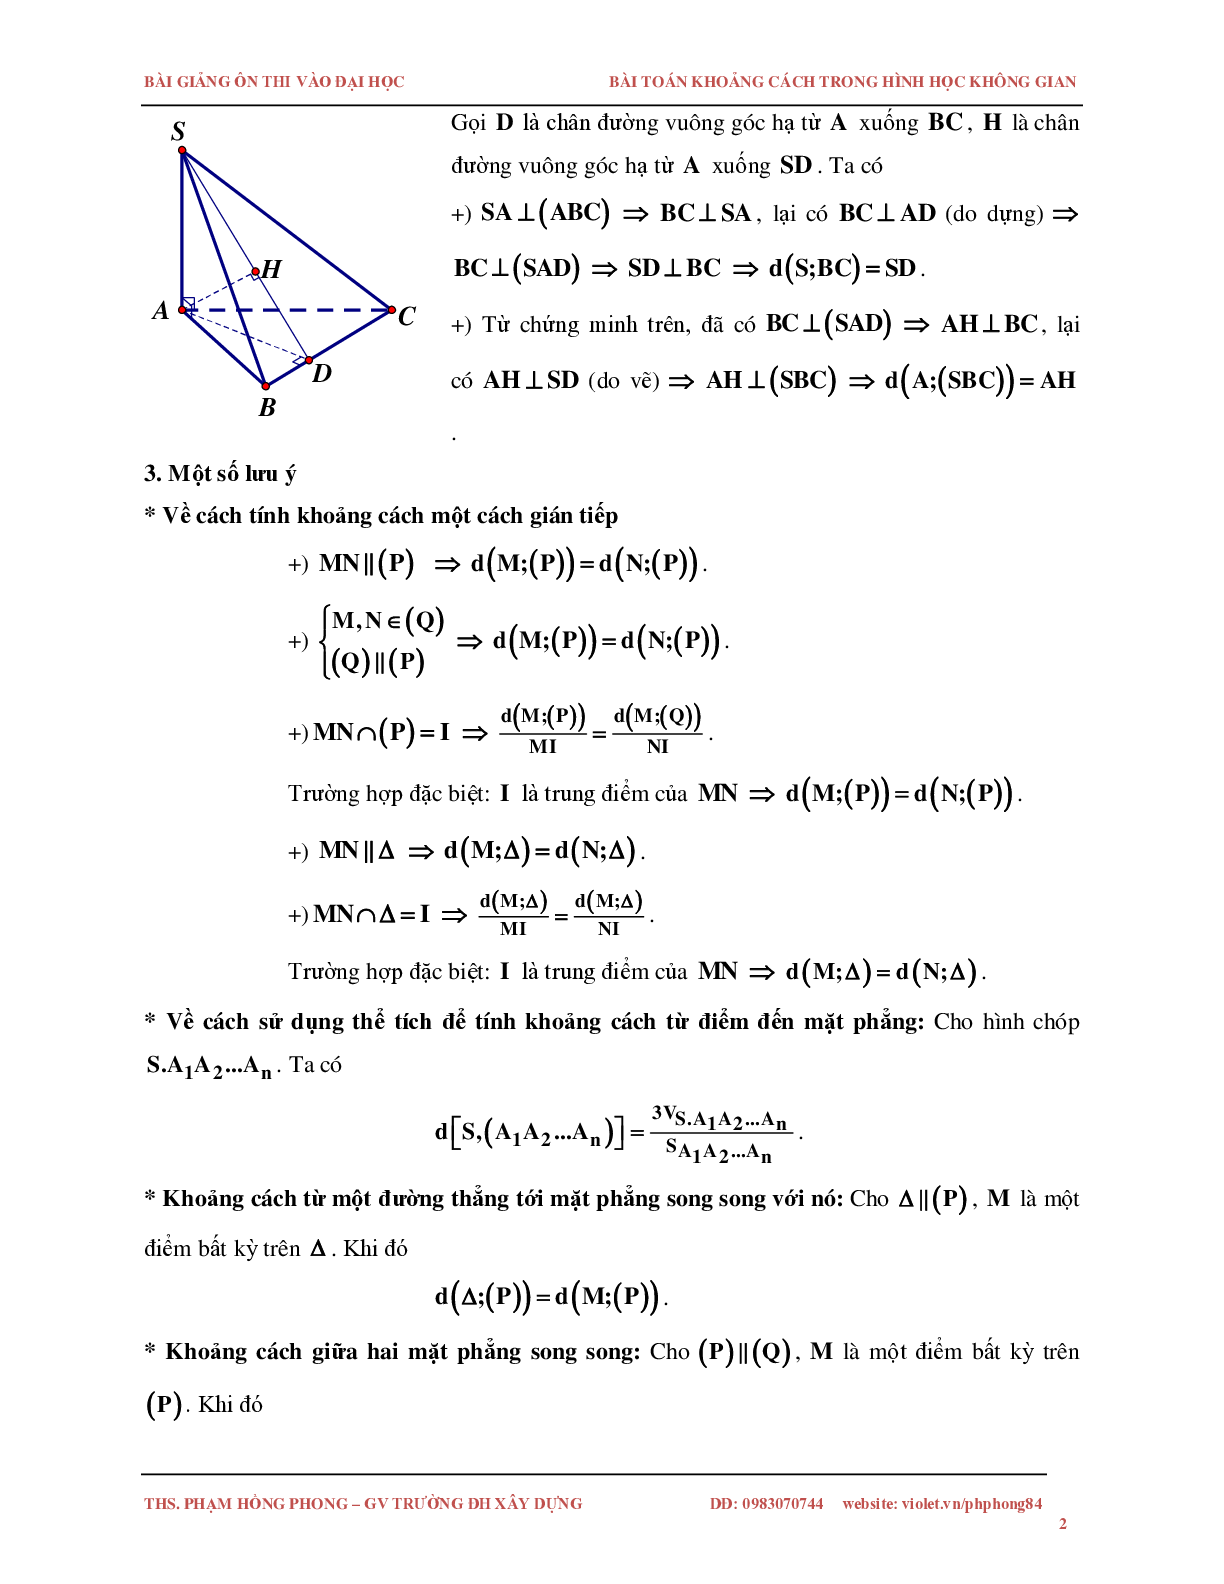 Bài toán về khoảng cách trong không gian (trang 2)